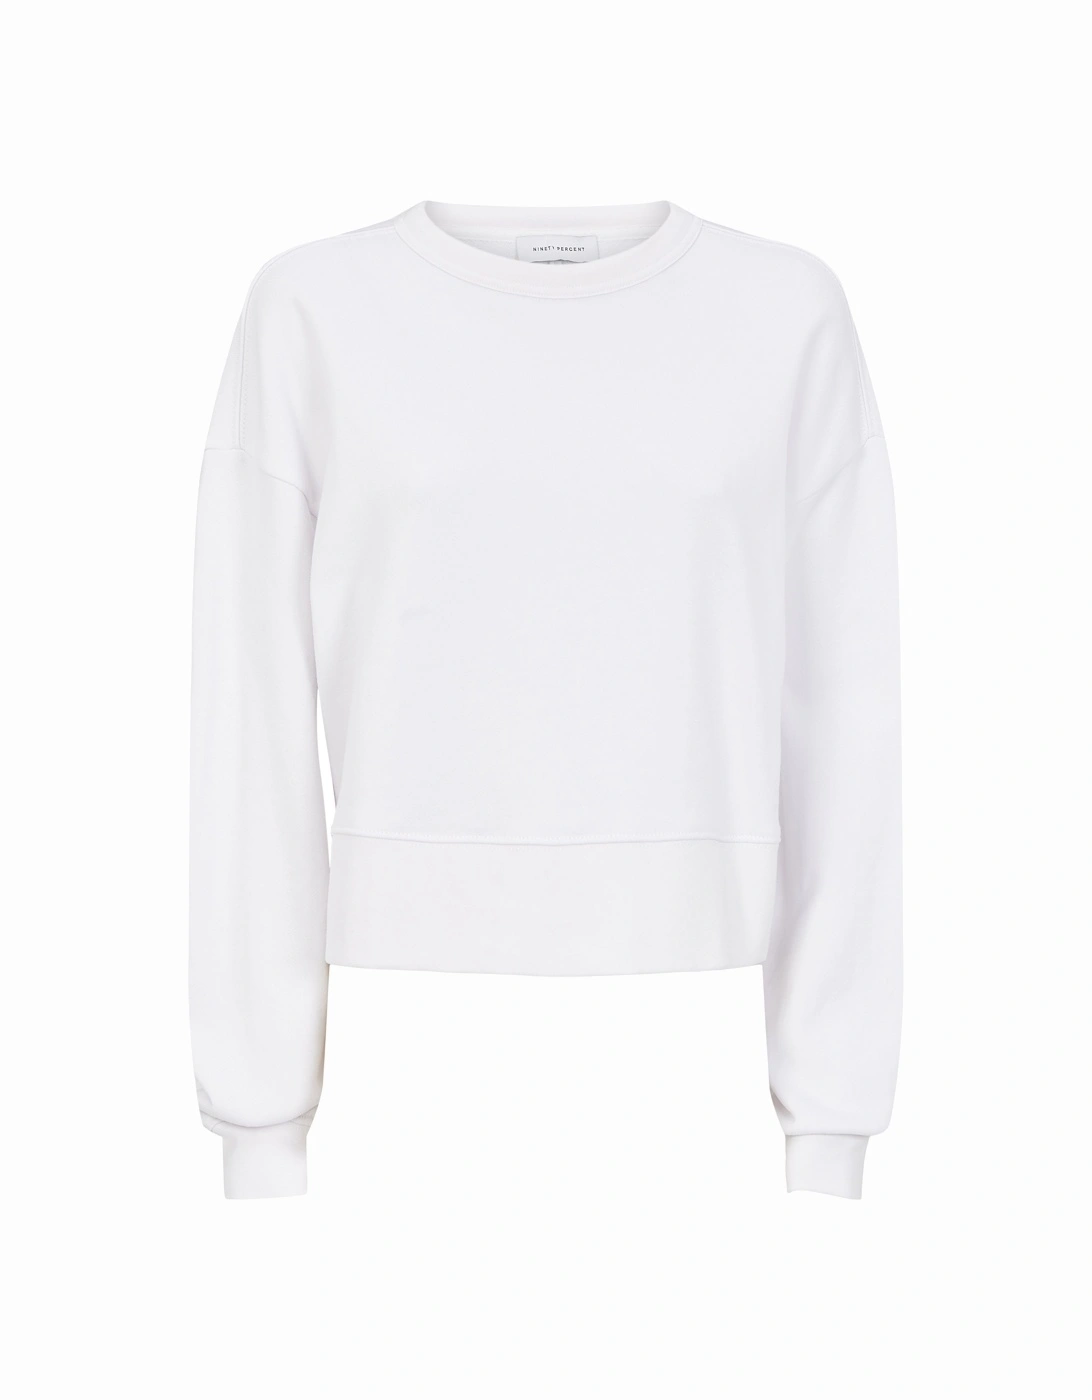 Ginnie Sweatshirt in White